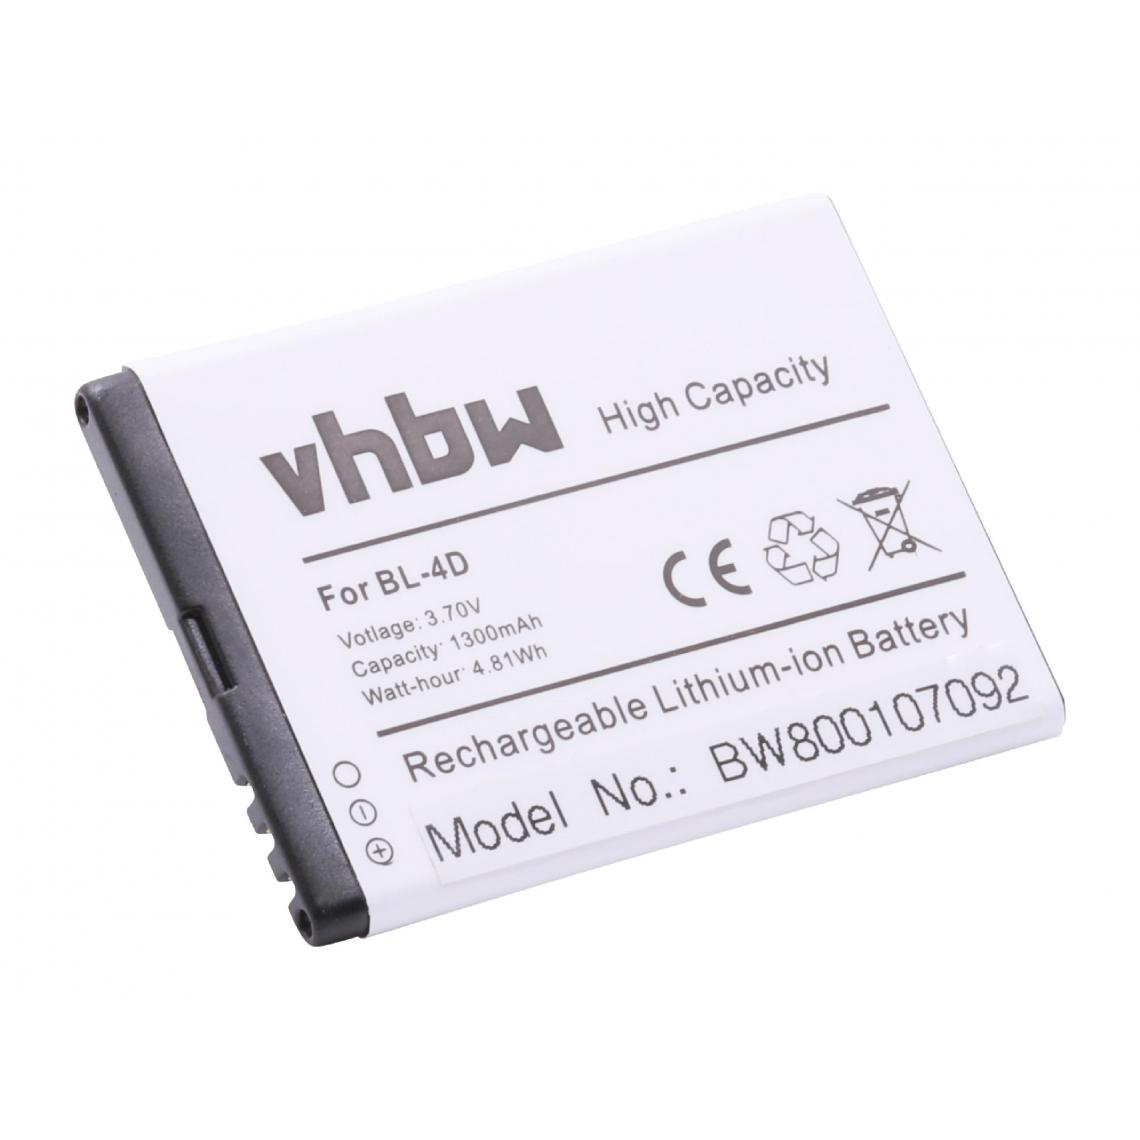 Vhbw - vhbw Batterie remplacement pour Binatone HZTBL-4D-01 pour smartphone (1300mAh, 3,7V, Li-ion) - Batterie téléphone